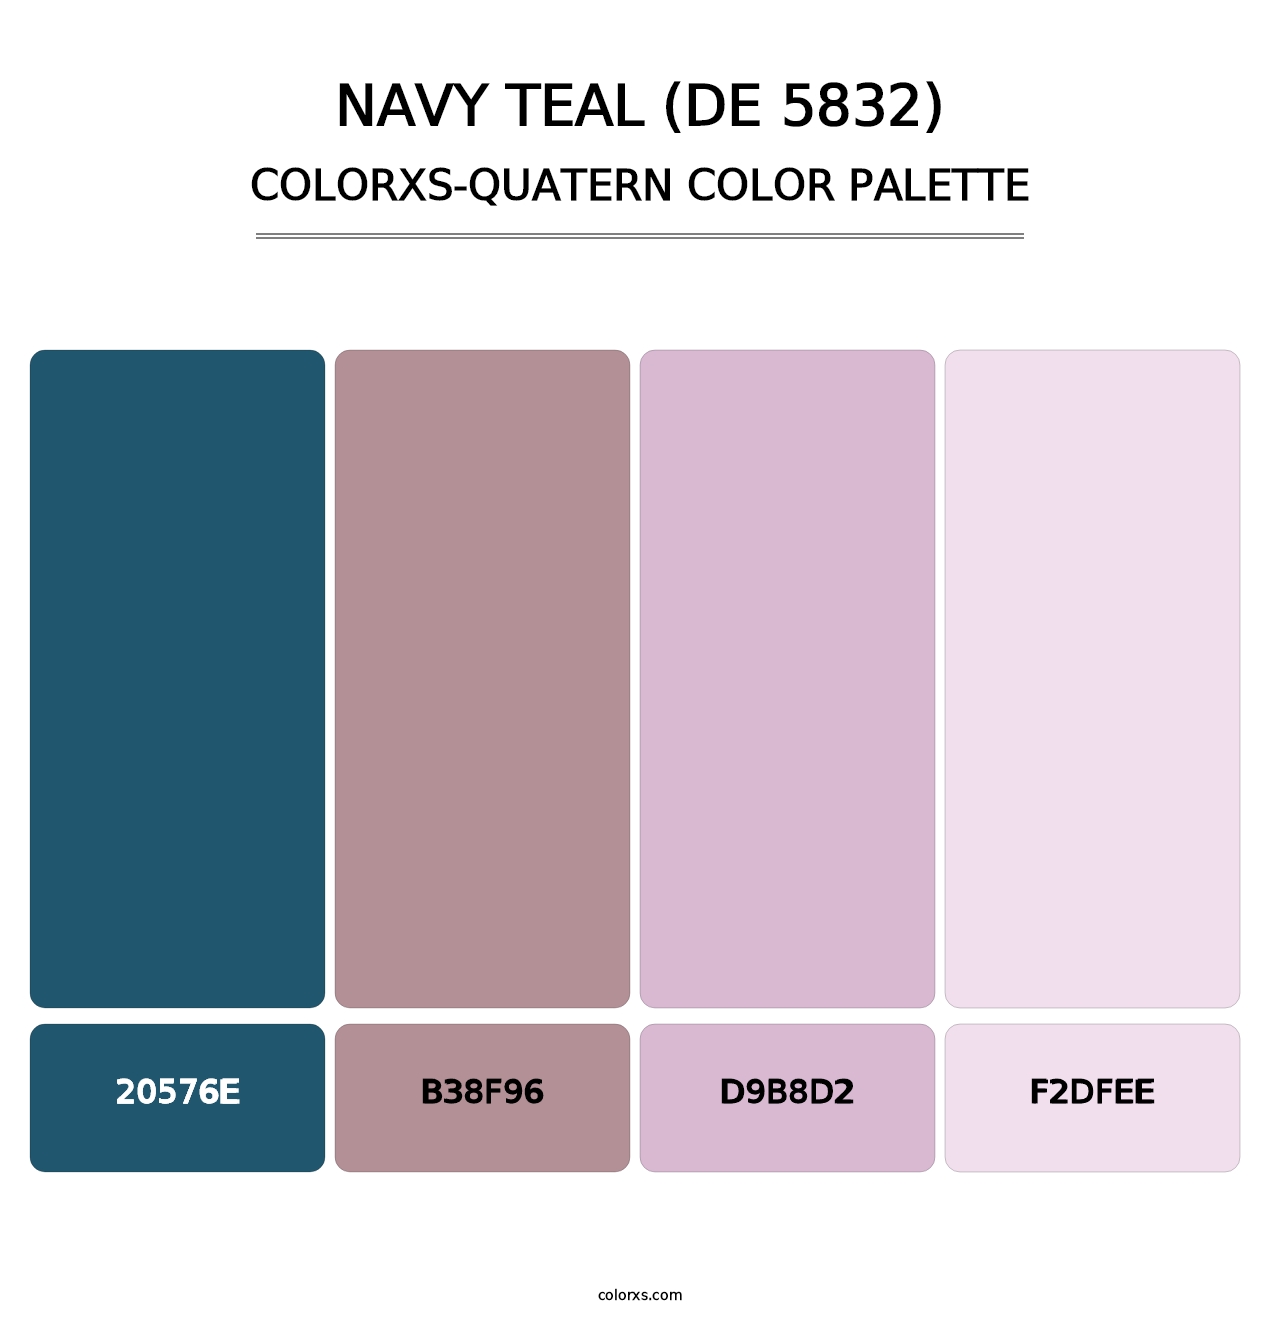 Navy Teal (DE 5832) - Colorxs Quatern Palette